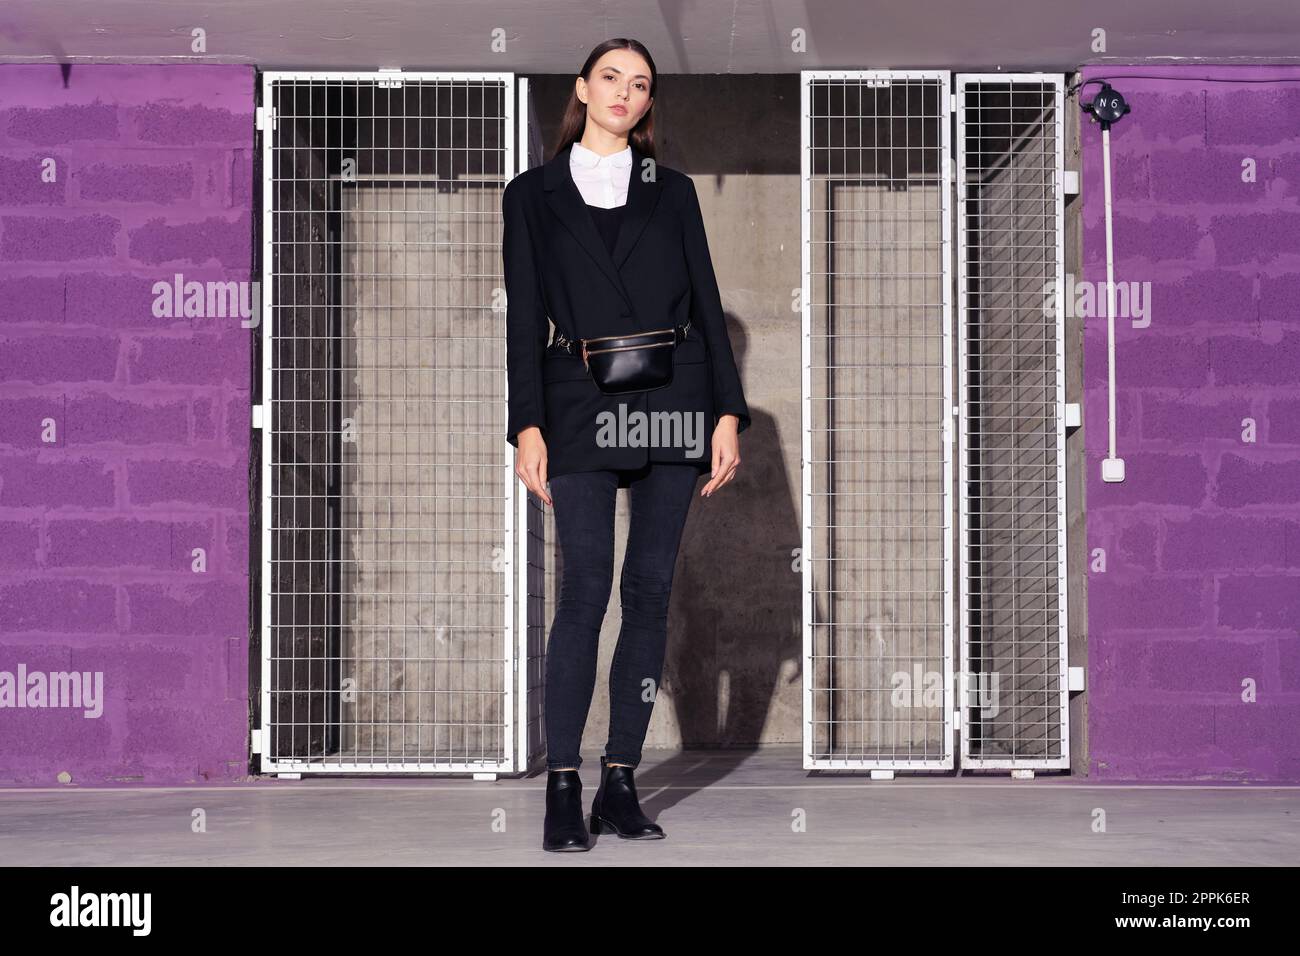 Fille en veste noire et jeans debout près de la salle technologique avec porte en grille métallique Banque D'Images